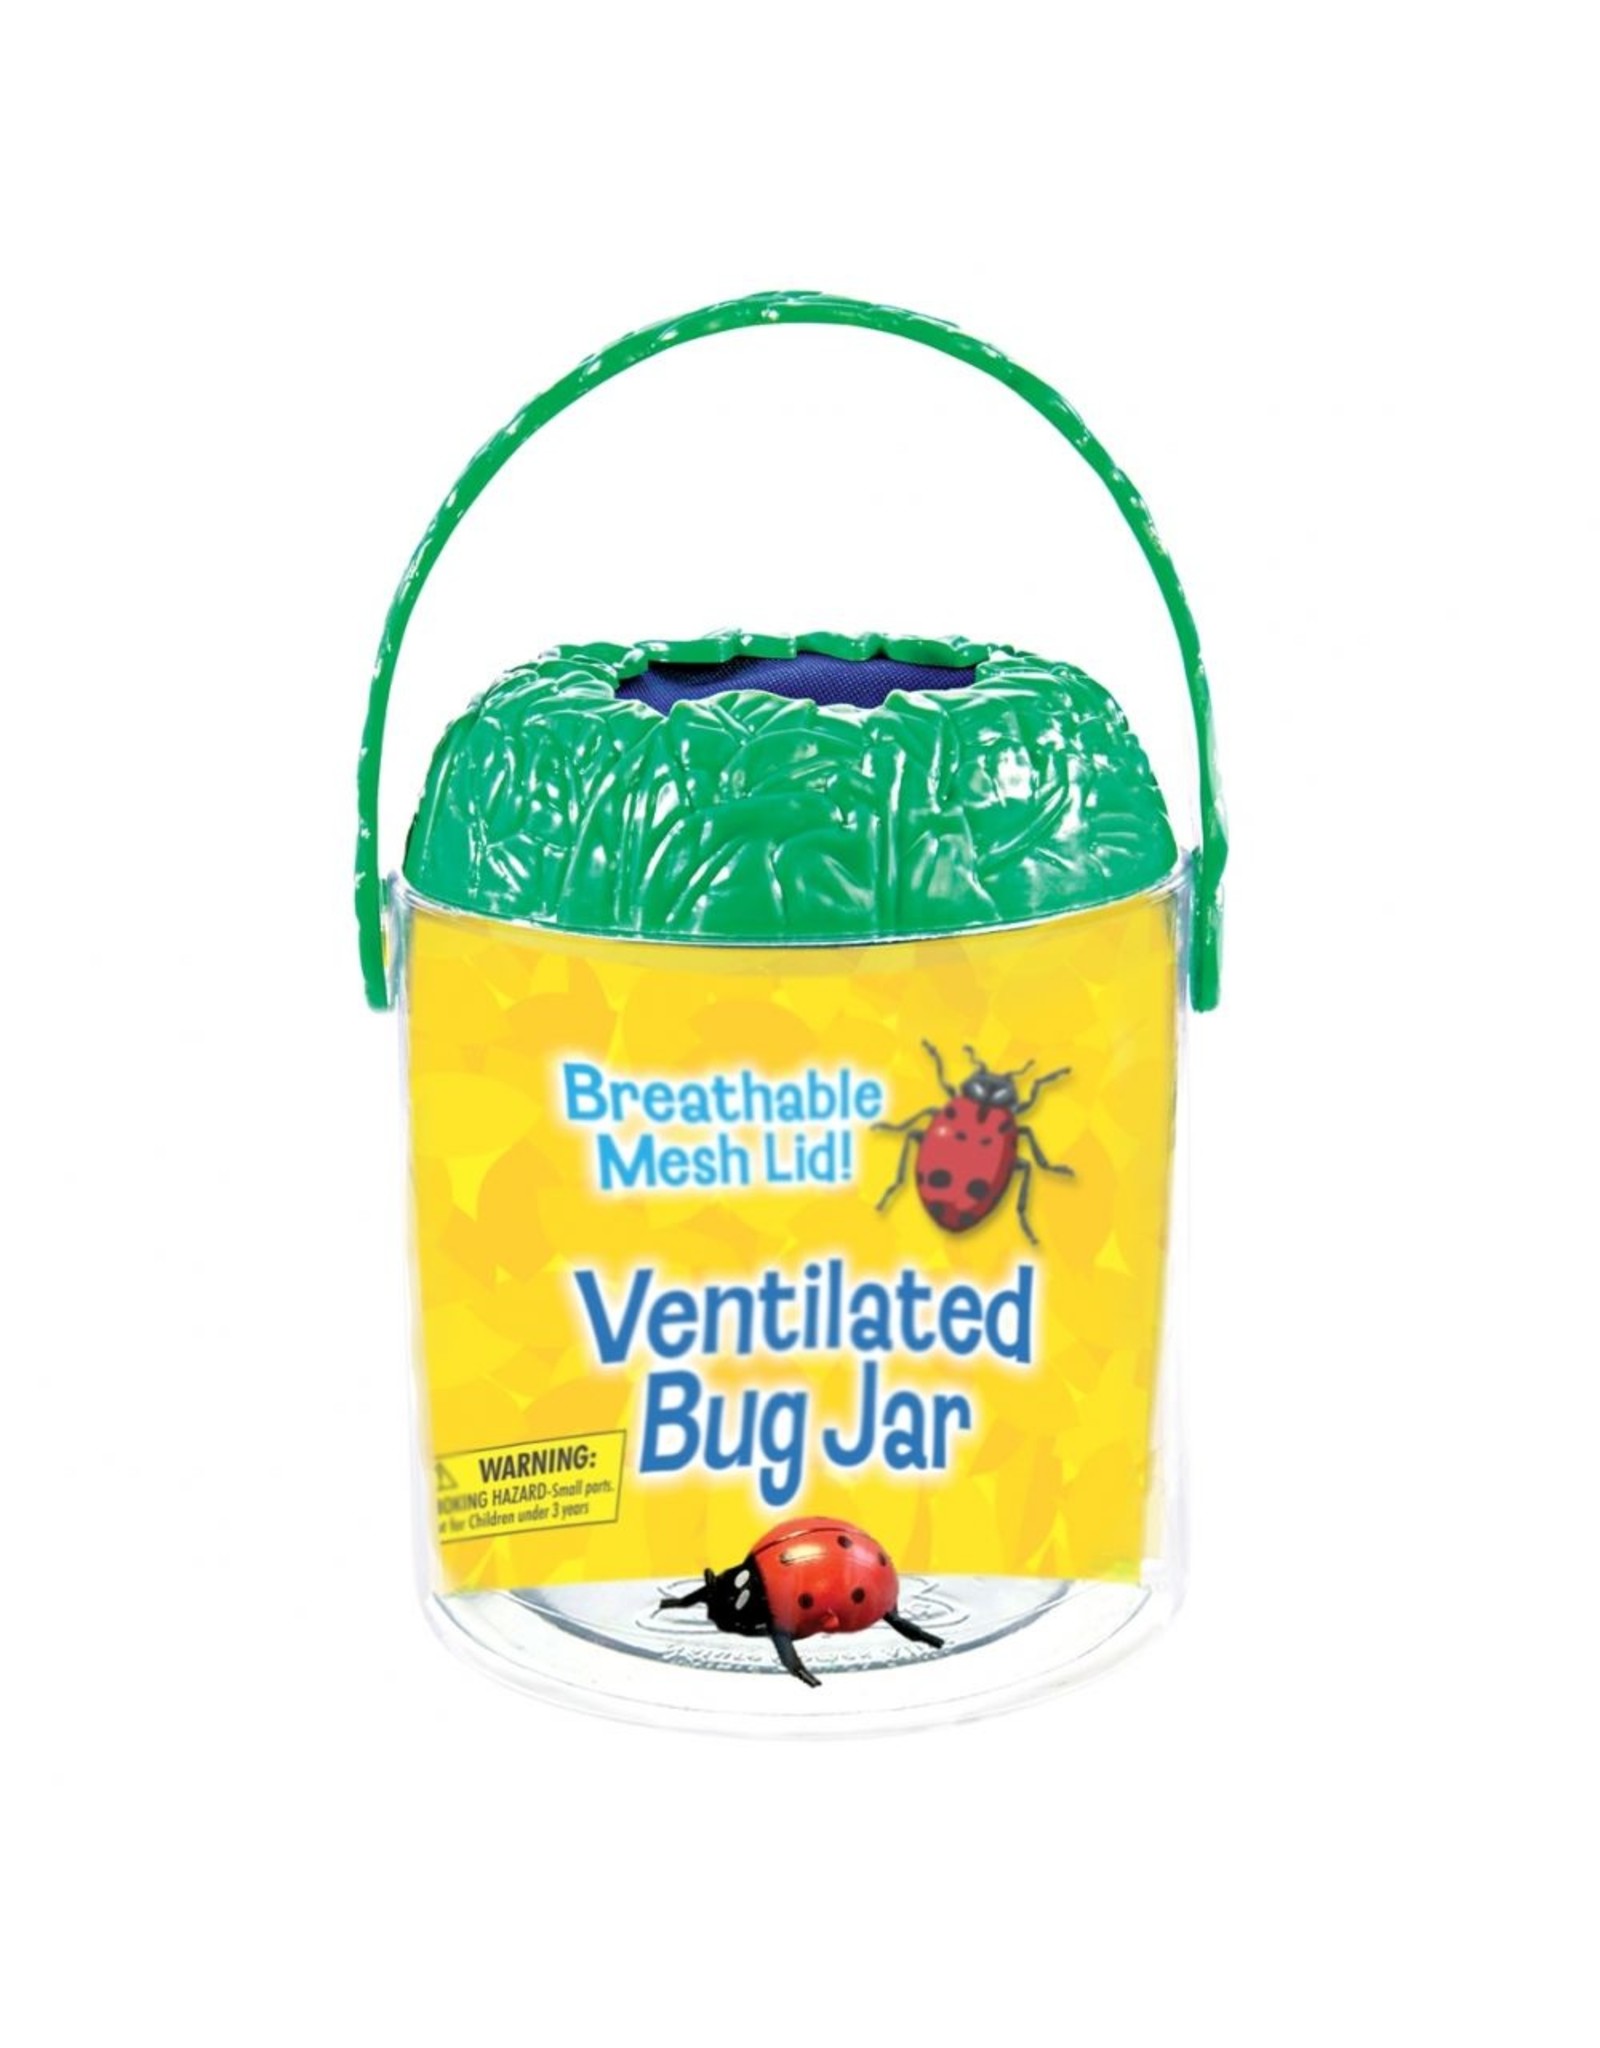 Best Bug Jar Ever